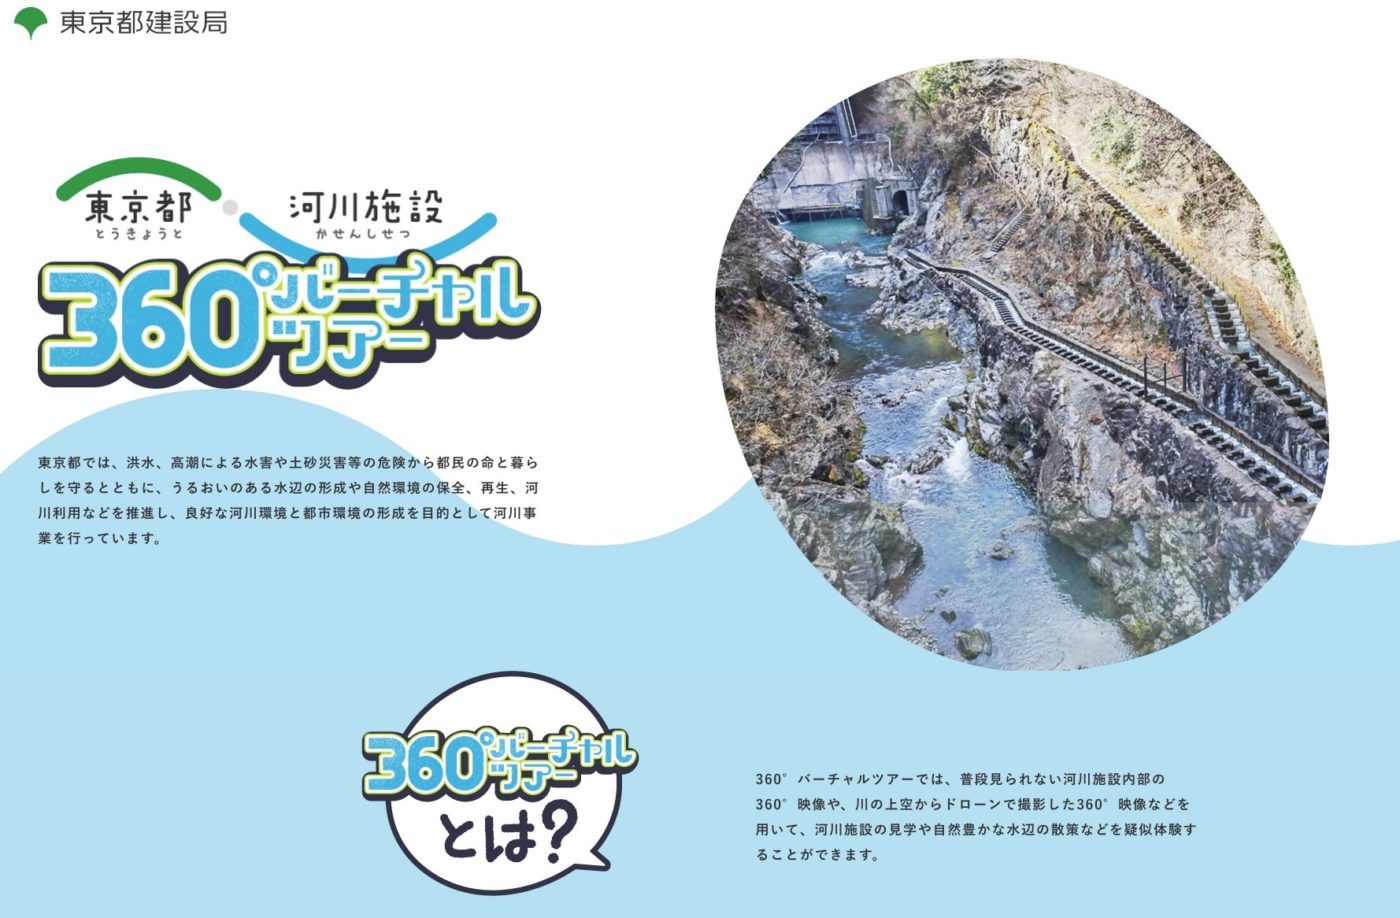 東京都 河川施設 360°バーチャルツアー　サイトイメージ